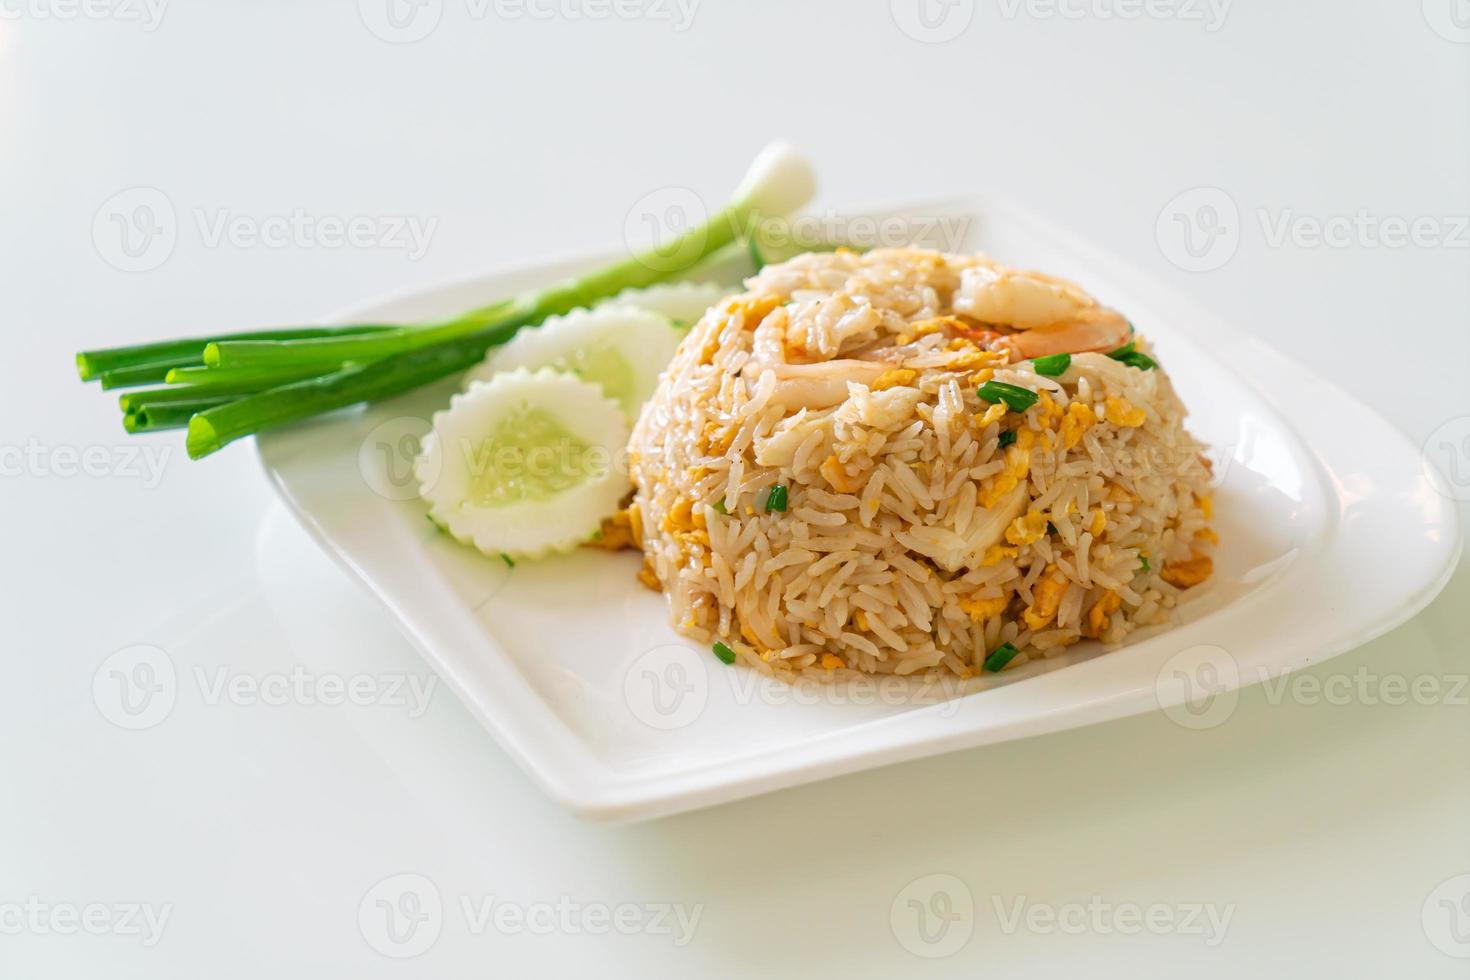 arroz frito com camarão e caranguejo no prato branco foto